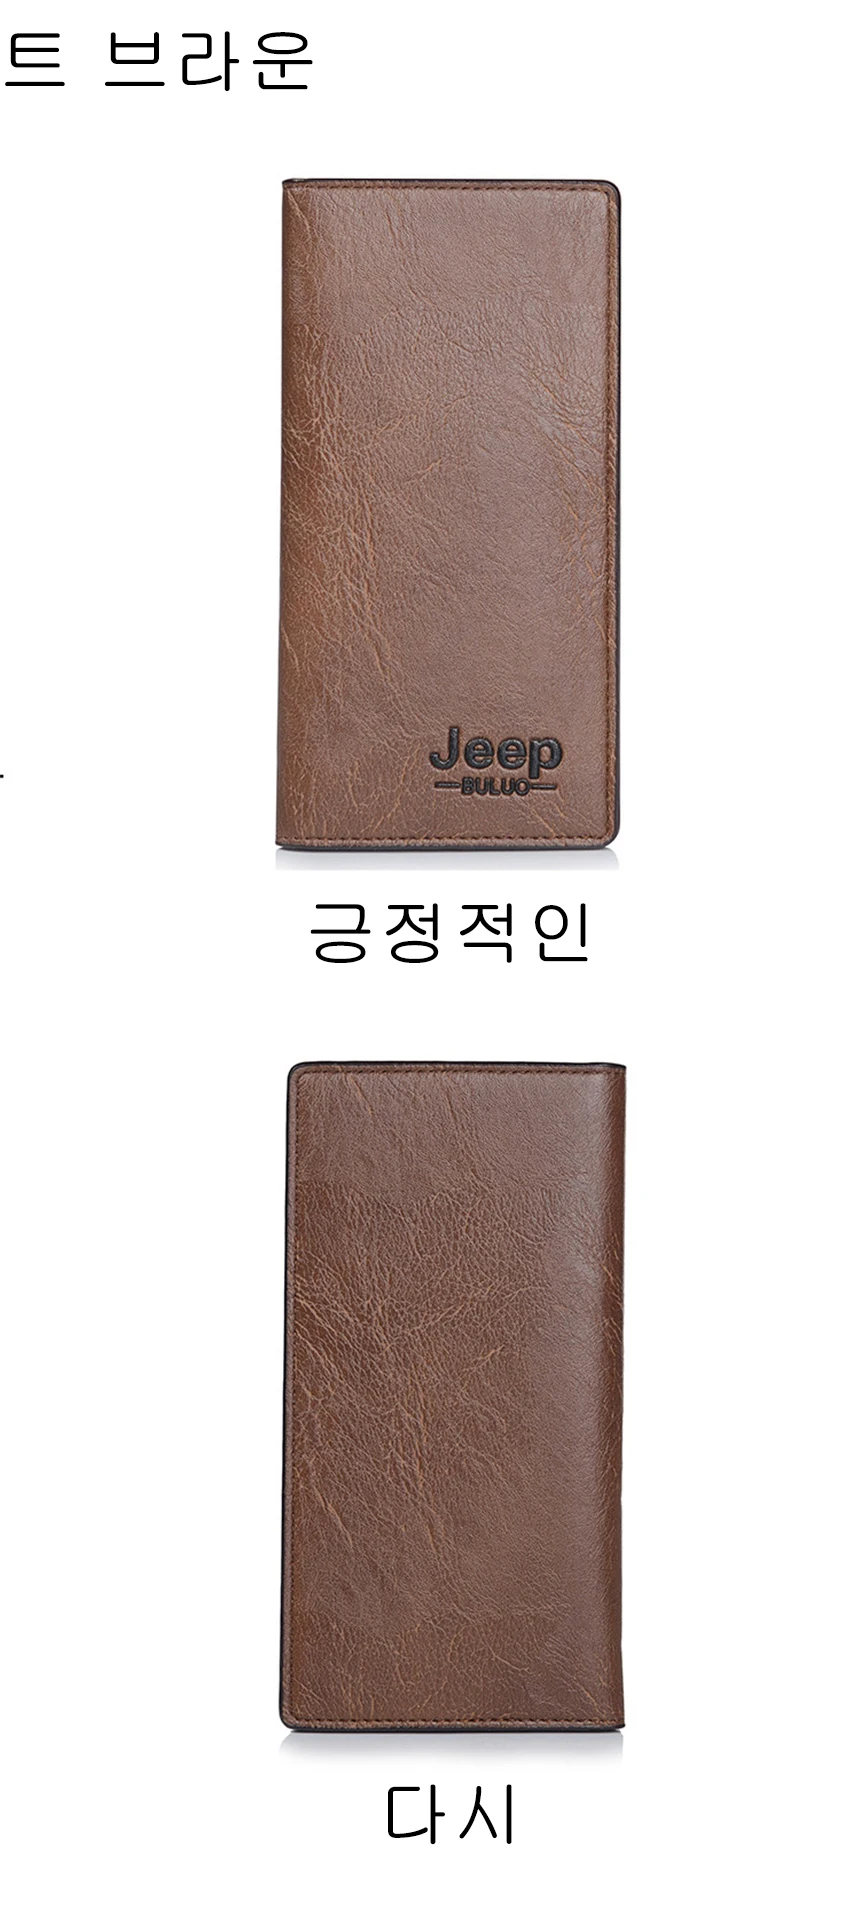 Мужское кожаное портмоне jeep buluo, брендовый кошелек цвета хаки с отделением для карт, длинный бумажник с отделением для монет, деловая сумка-клатч, модель 8068, все сезоны